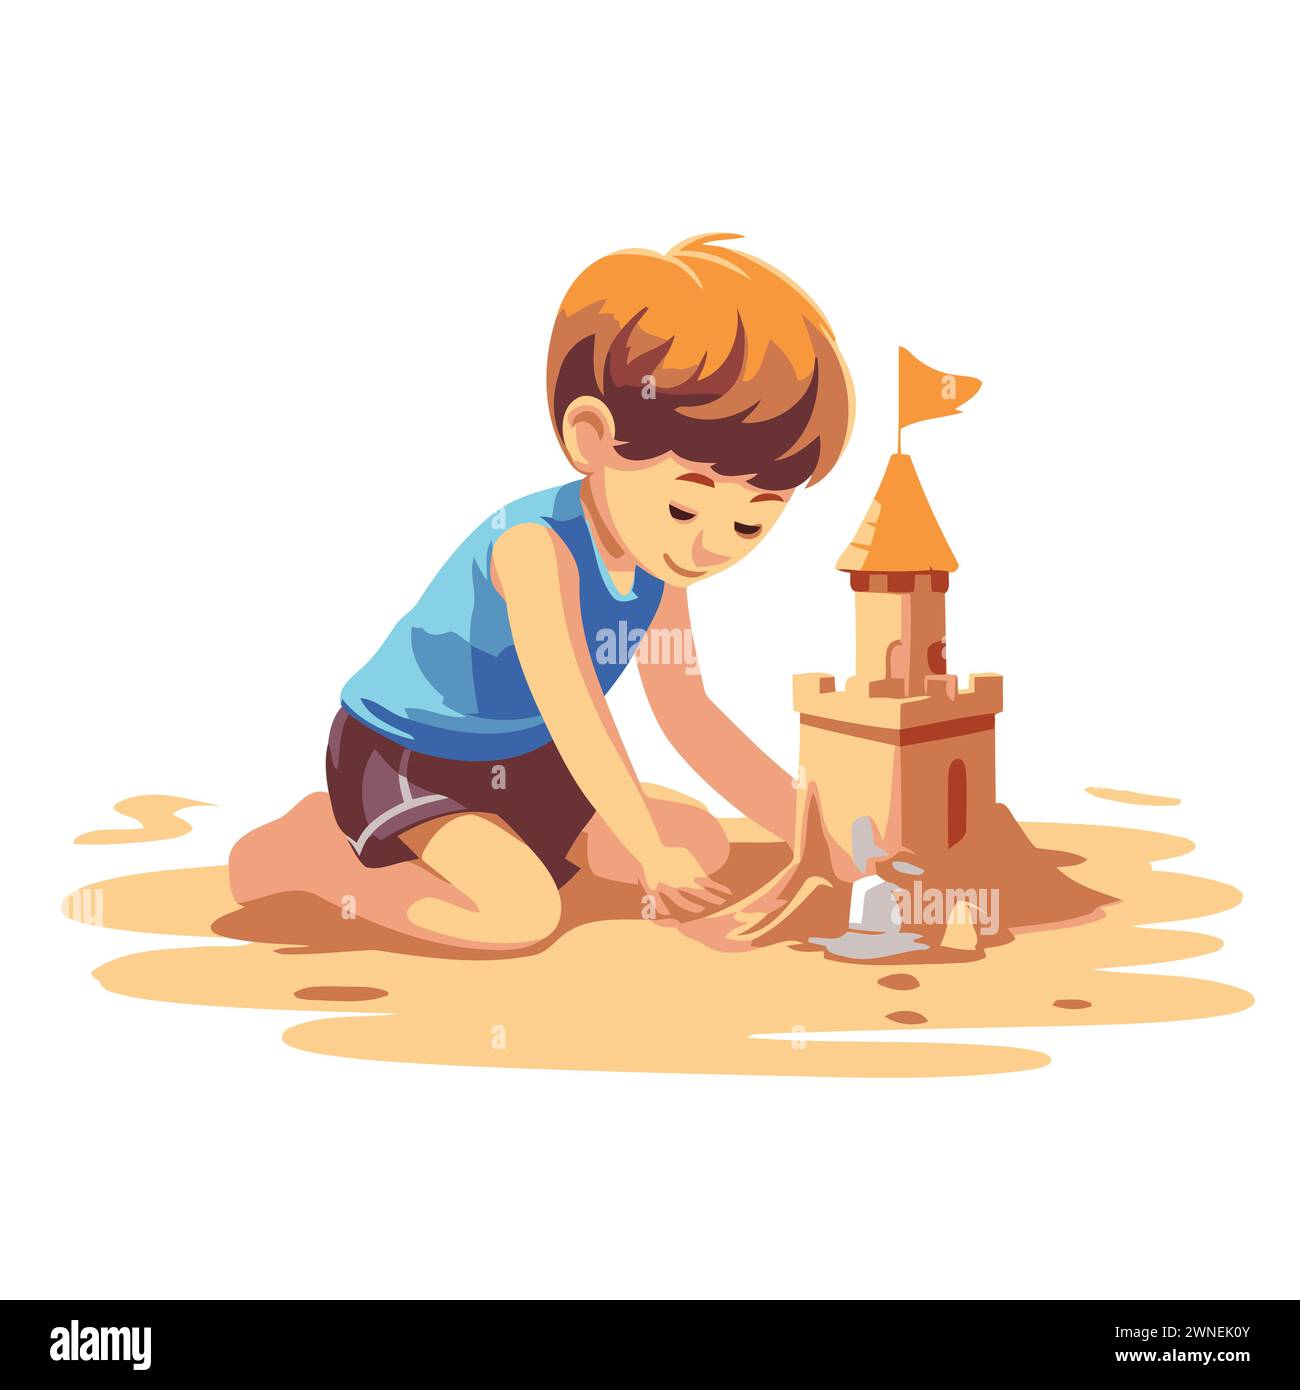 Mignon petit garçon jouant avec du sable et construisant une tour. illustration vectorielle de dessin animé isolée sur fond blanc. Illustration de Vecteur